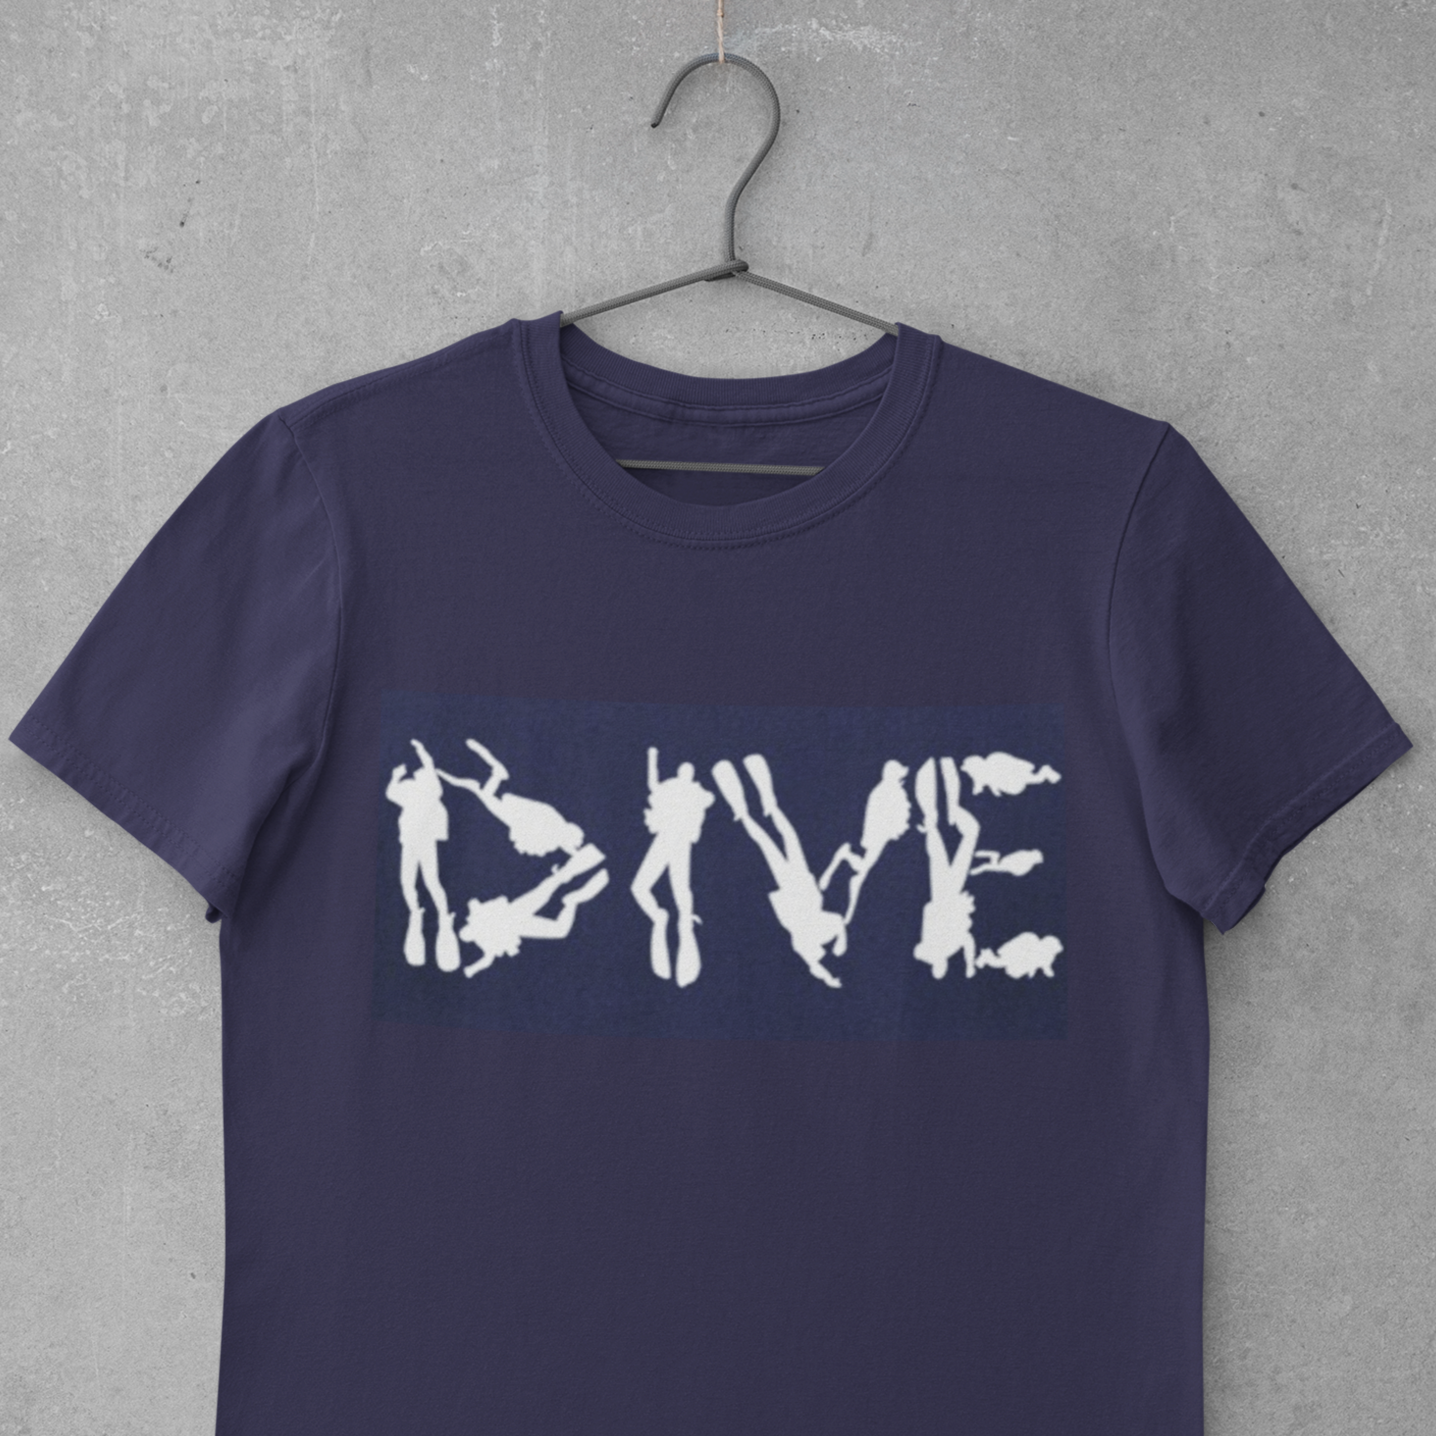 blue dive shirts, scuba diving, scuba diving t-shirts, Sleeve, 100% cotton, t-shirt